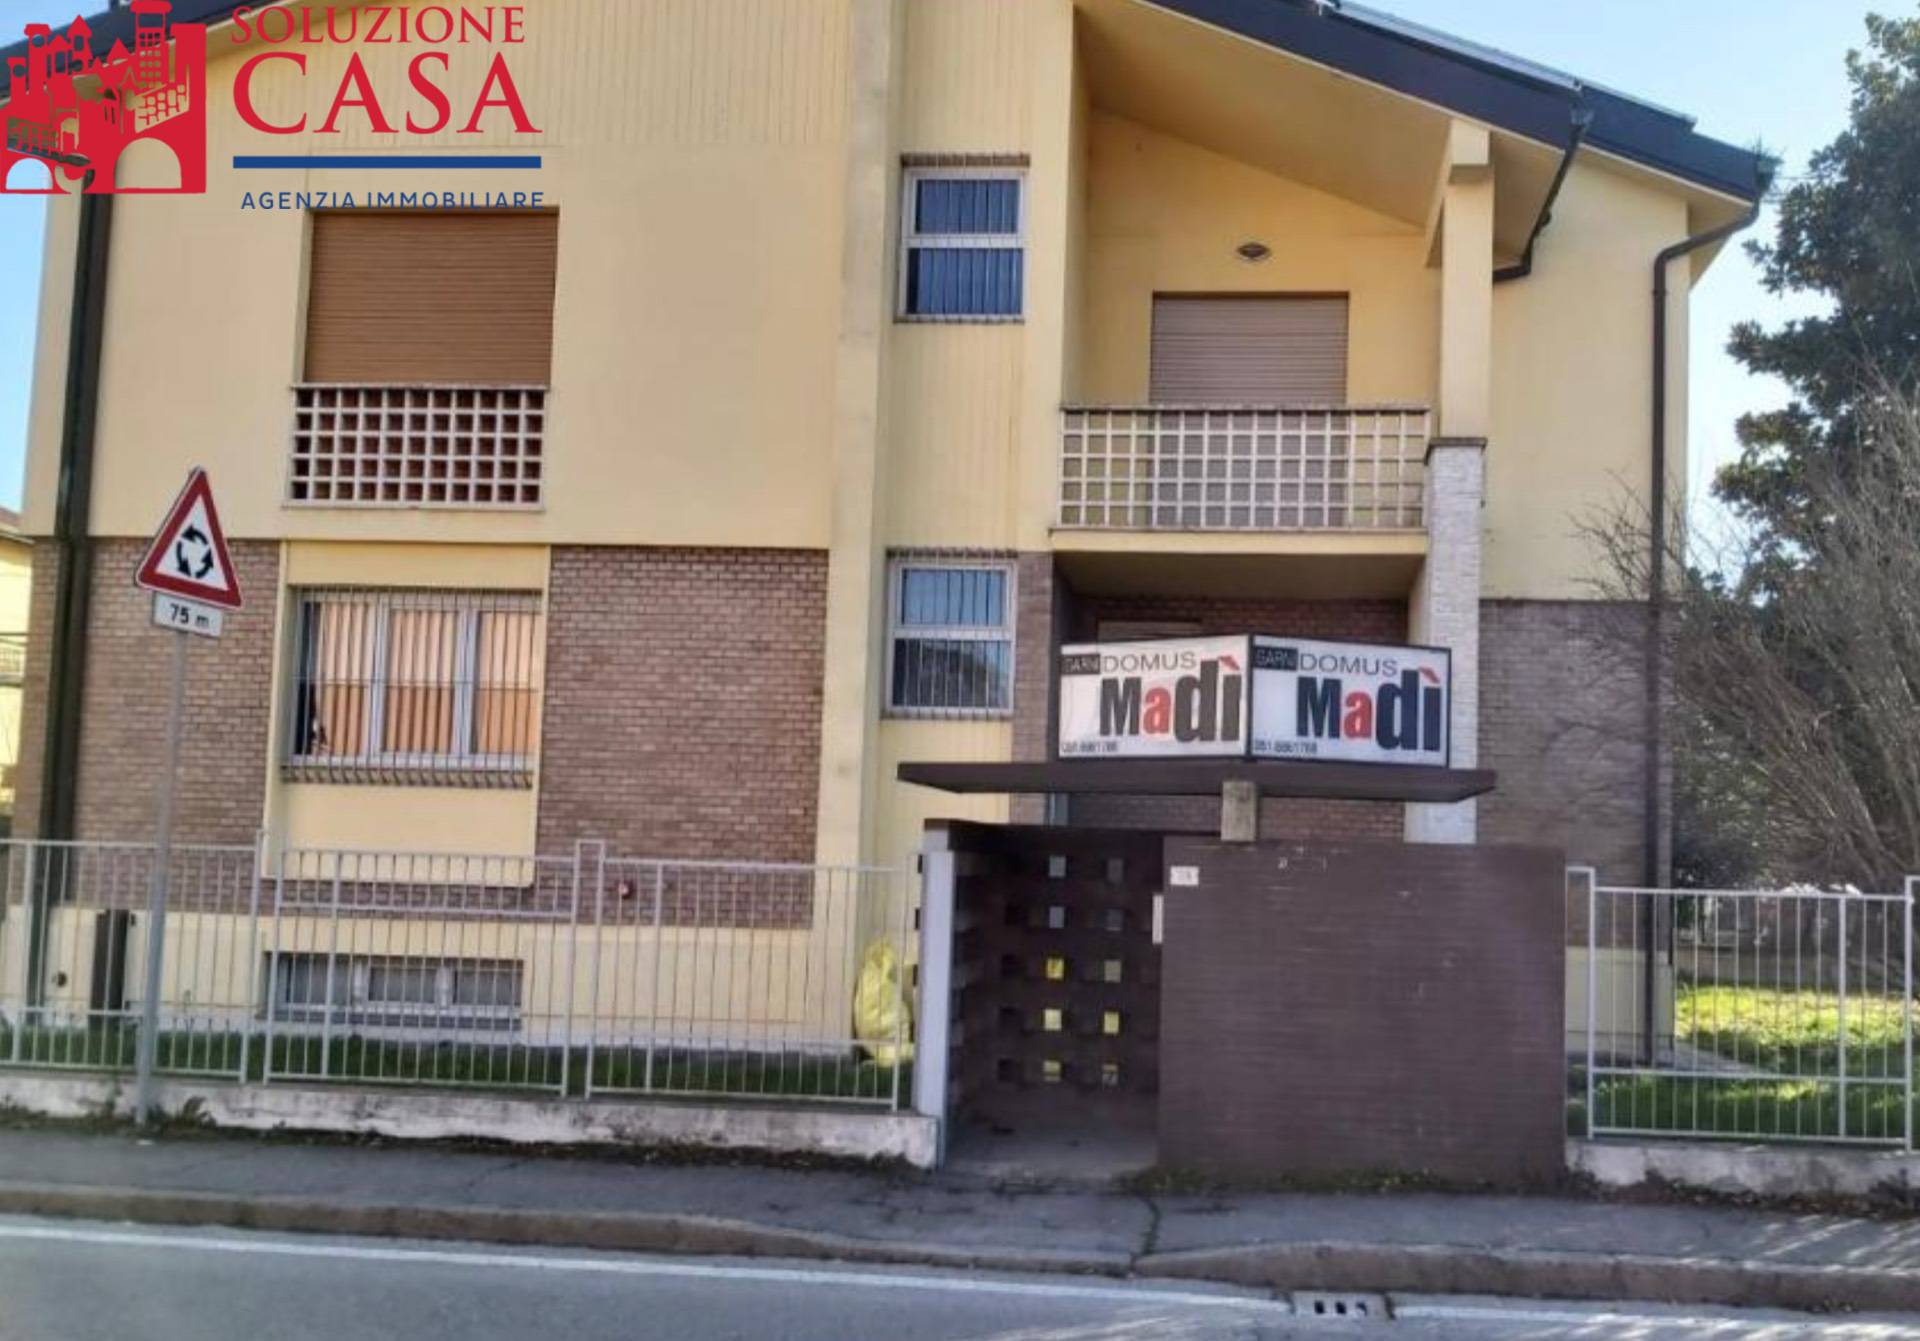 Appartamento in affitto a Pieve di Cento, 1 locali, prezzo € 90 | PortaleAgenzieImmobiliari.it